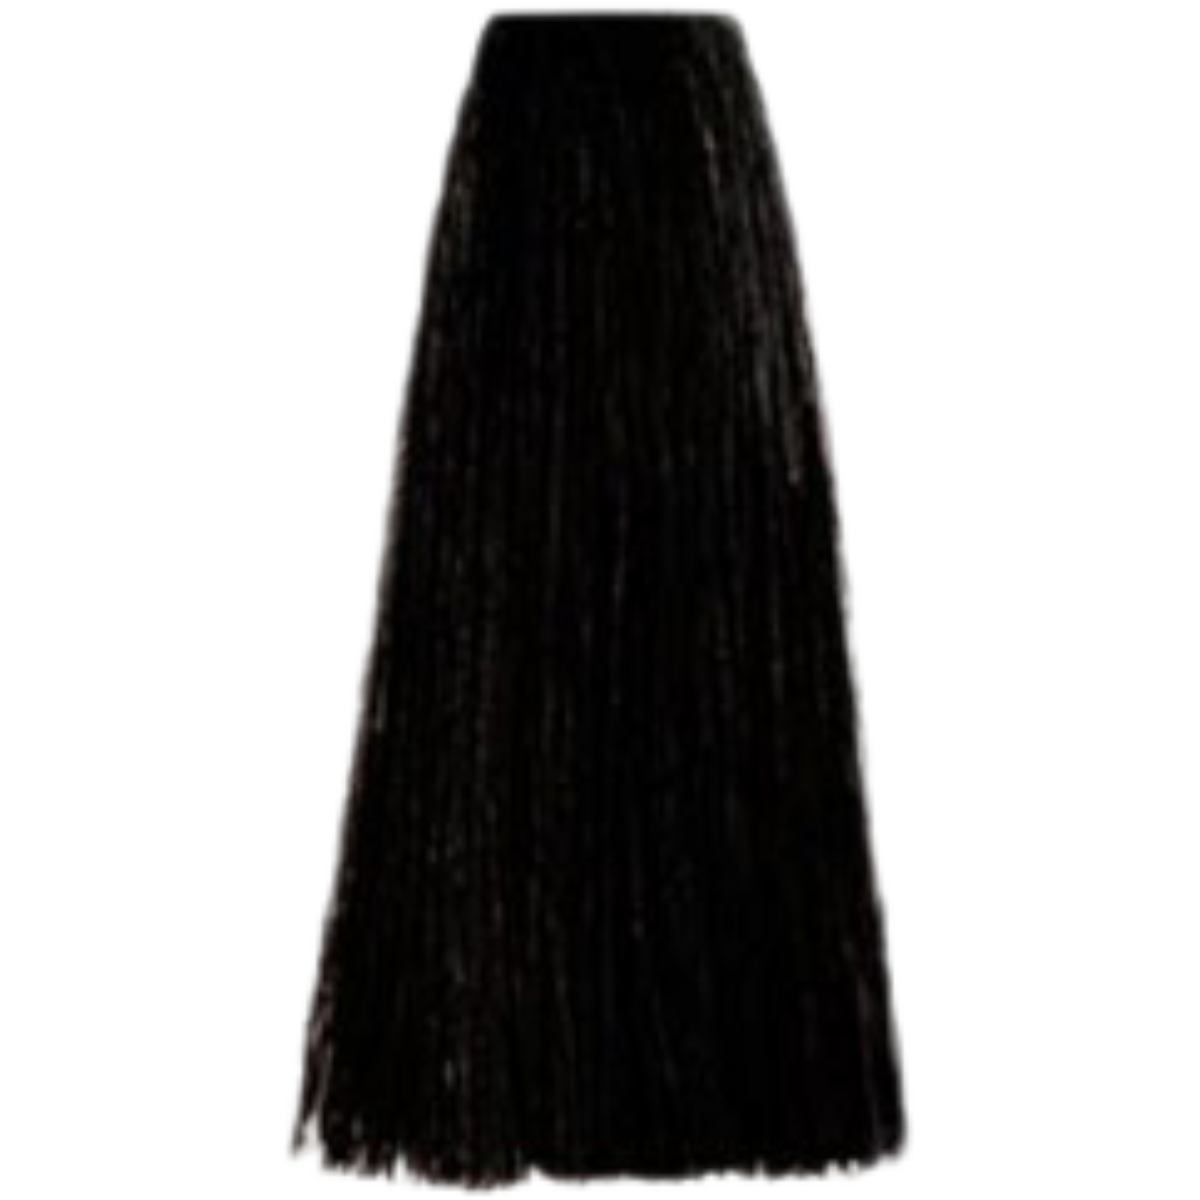 צבע שיער 1.10 BLUE BLACK פארמויטה FarmaVita צבע לשיער 100 גרם